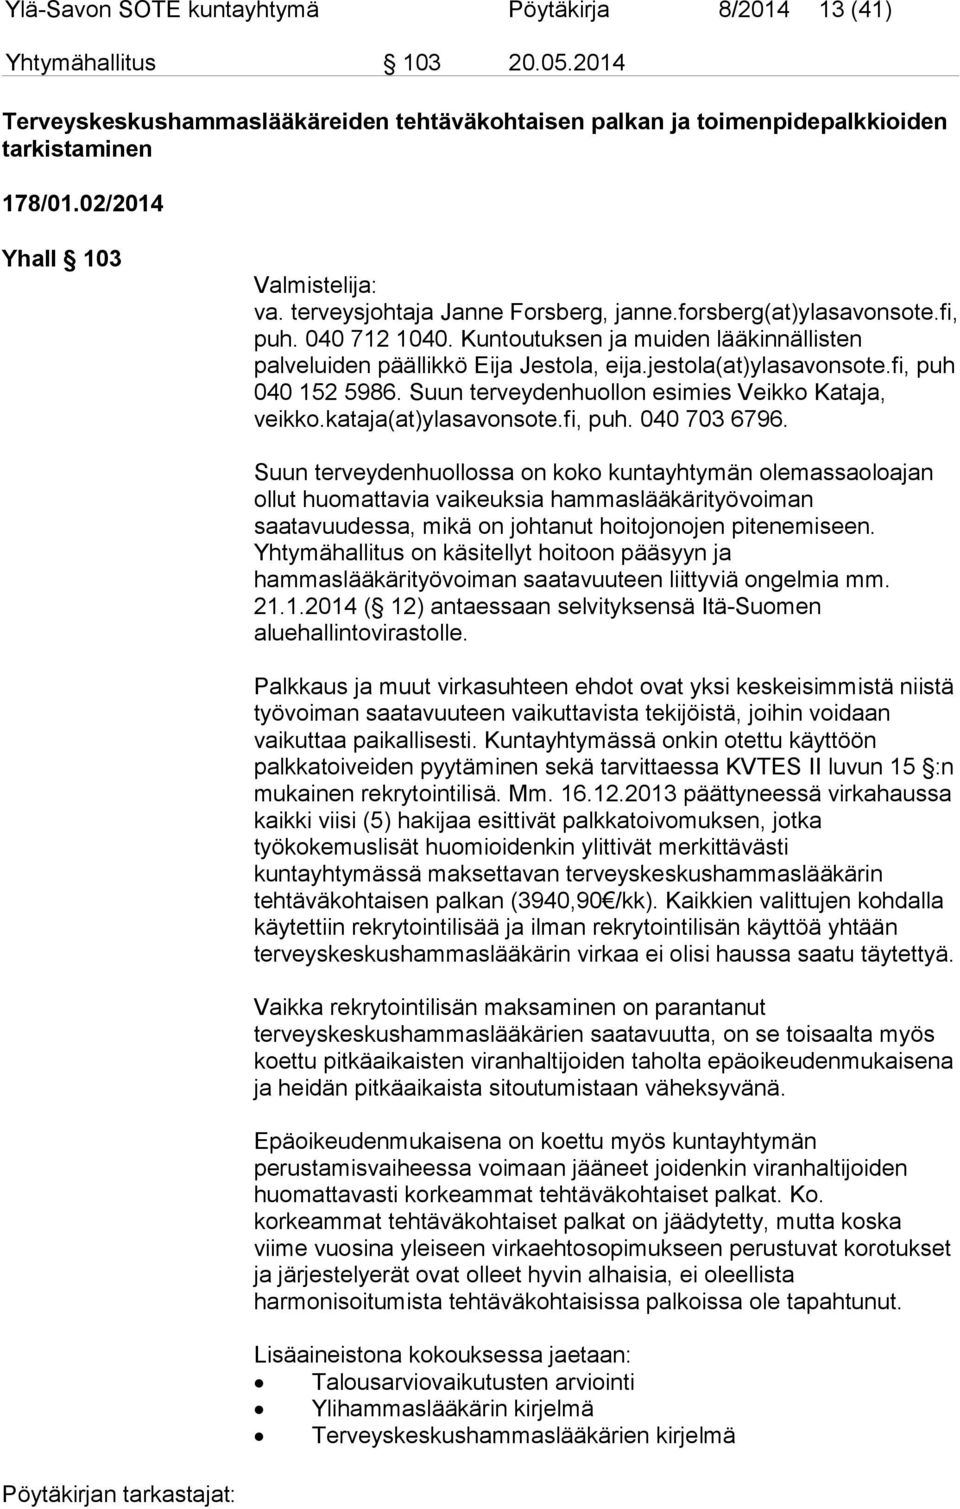 Kuntoutuksen ja muiden lääkinnällisten palveluiden päällikkö Eija Jestola, eija.jestola(at)ylasavonsote.fi, puh 040 152 5986. Suun terveydenhuollon esimies Veikko Kataja, veikko.